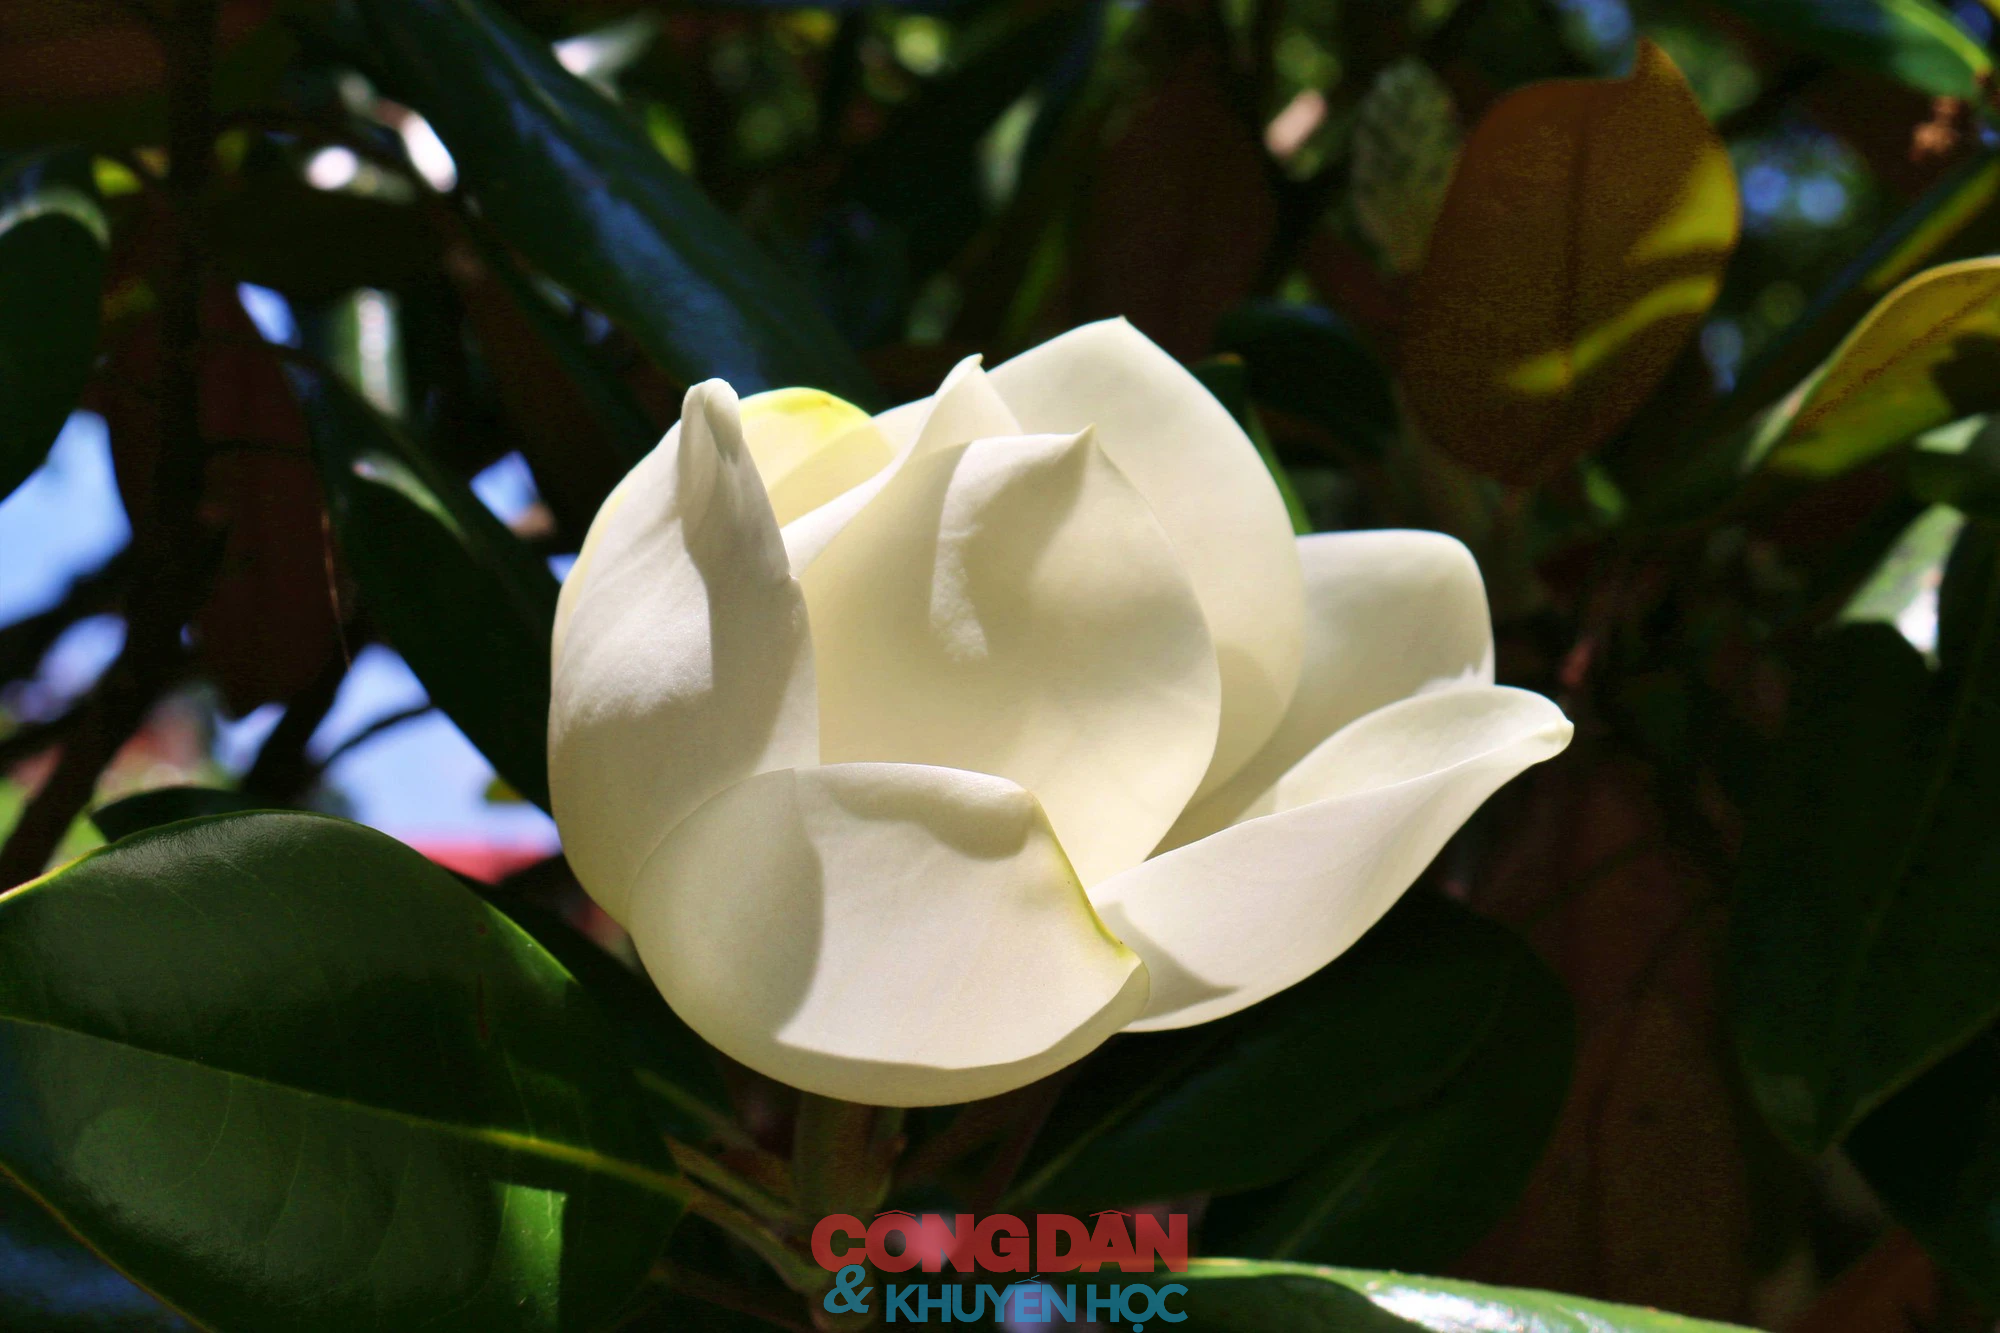 Chiêm ngưỡng sắc trắng tinh khiết hoa sen đất chùa Bối Khê  - Ảnh 1.